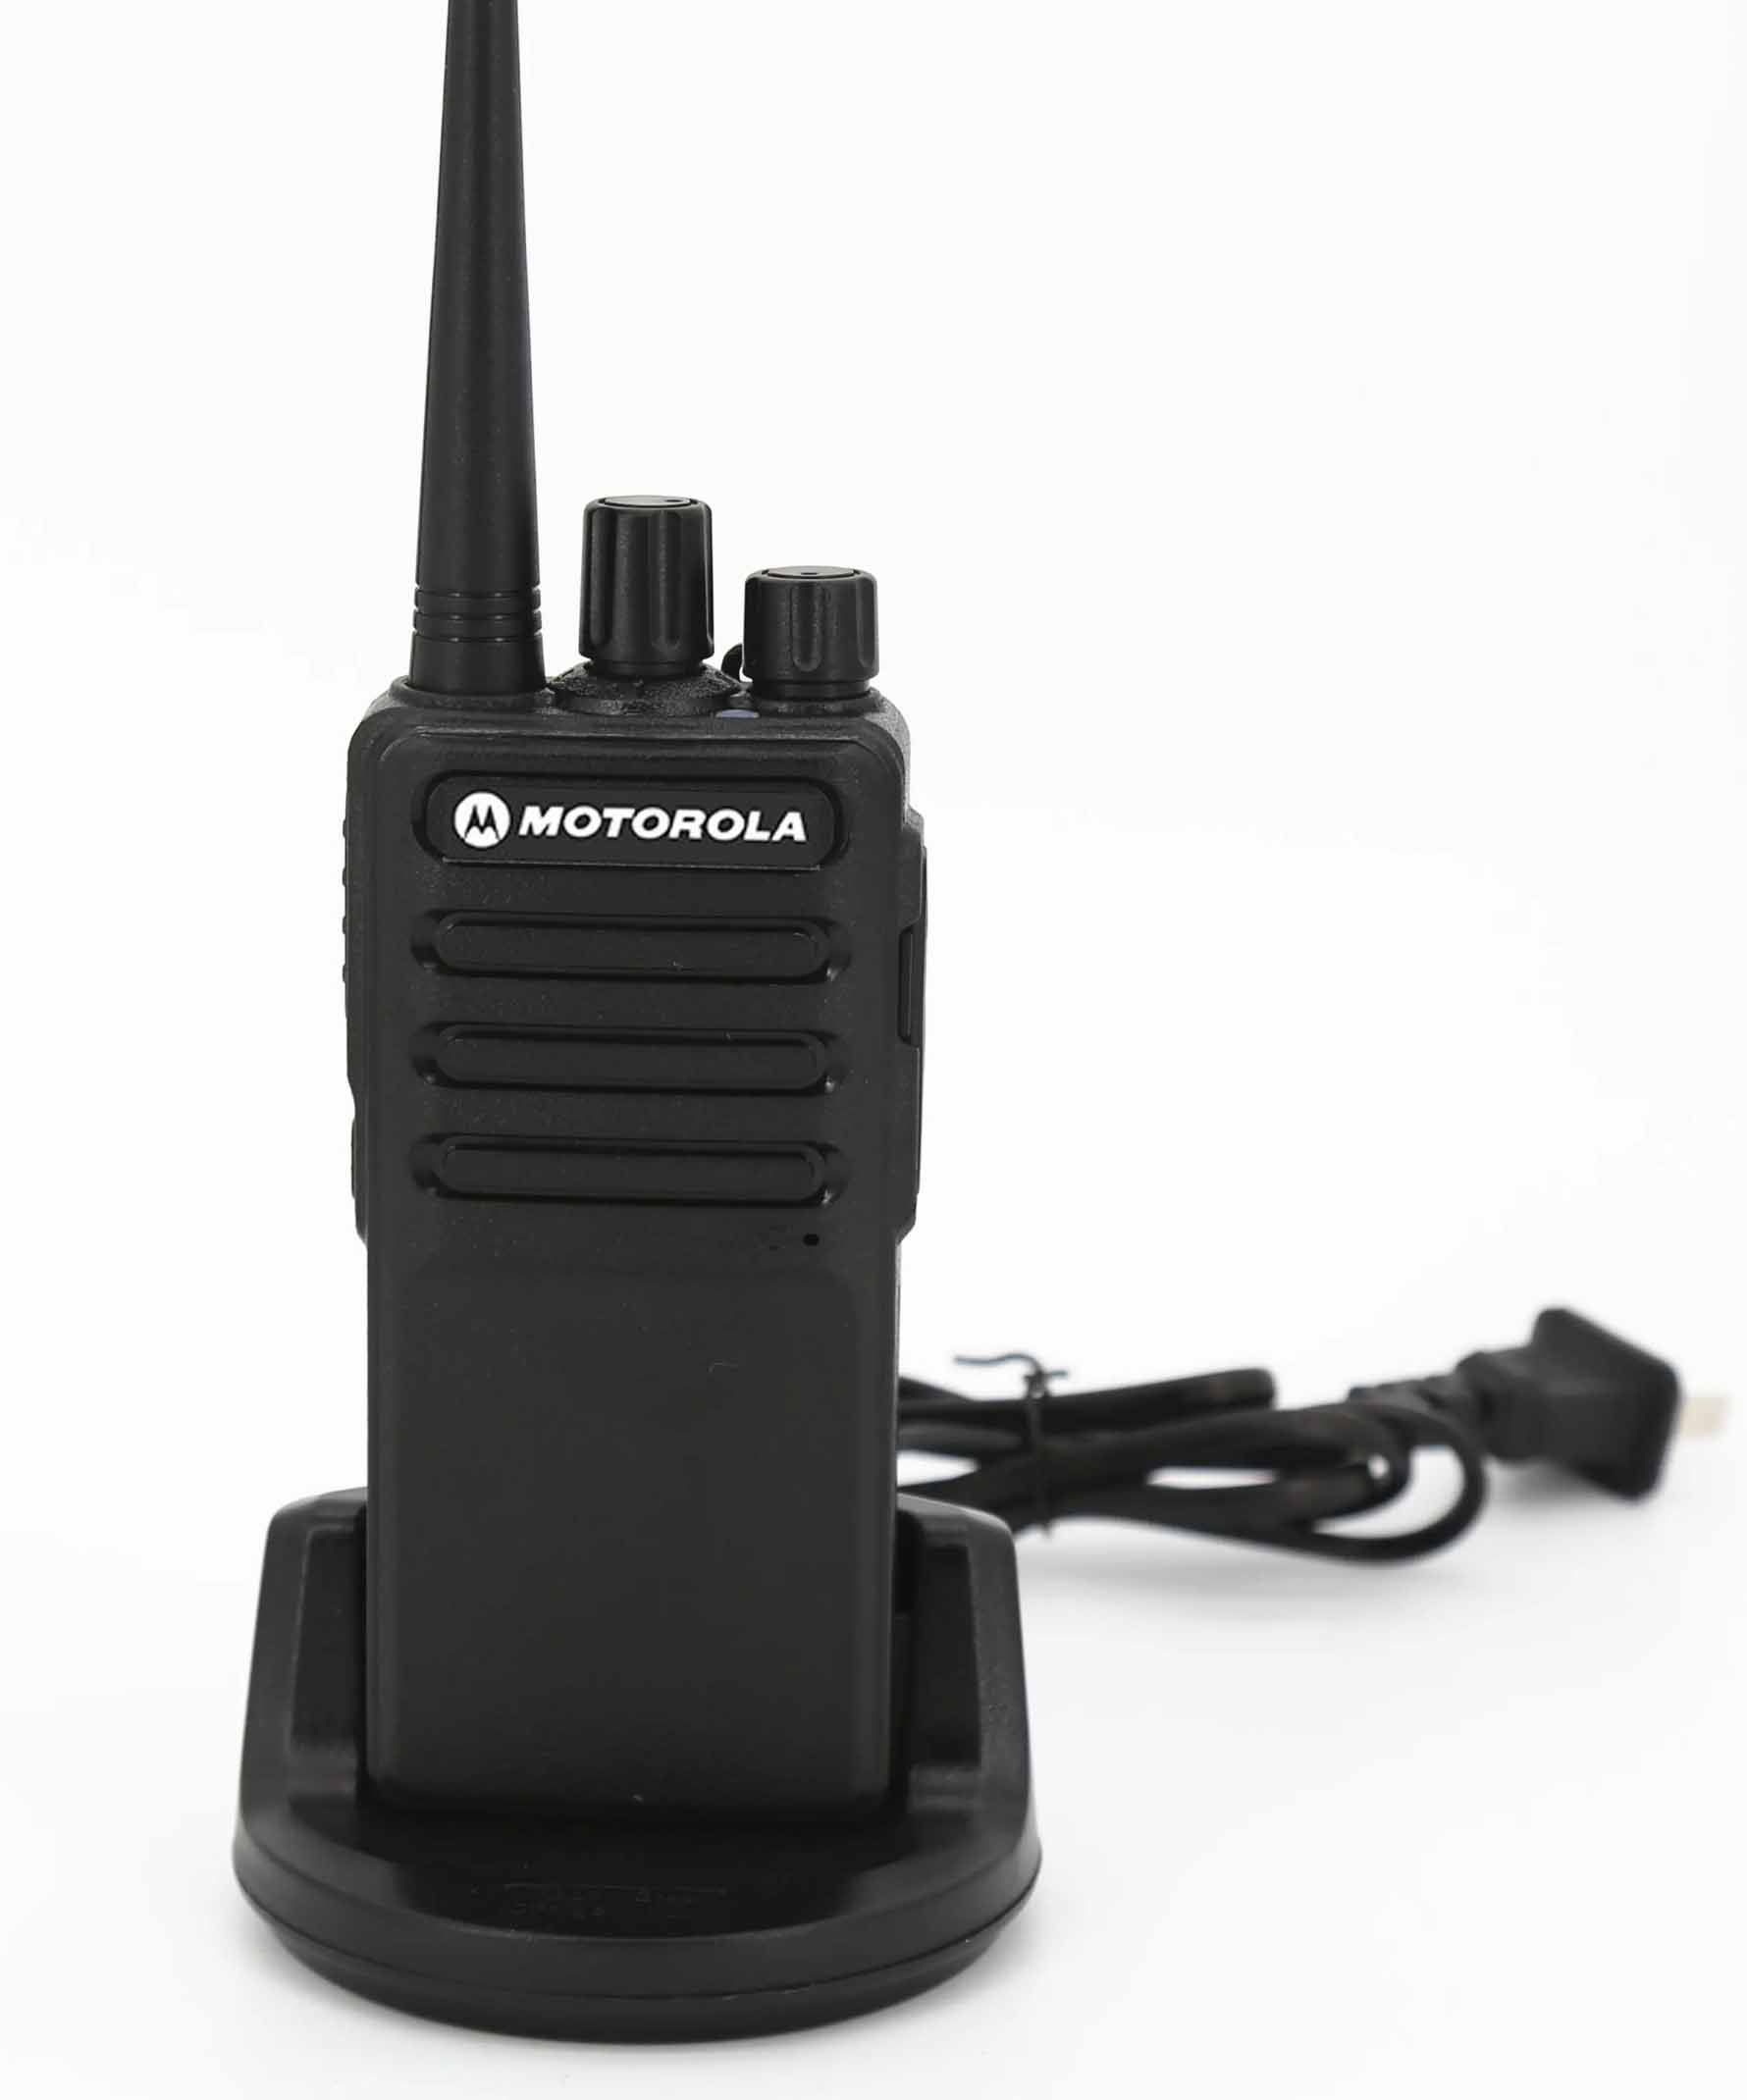 Bộ đàm Motorola GP 358 là loại bộ đàm cầm tay